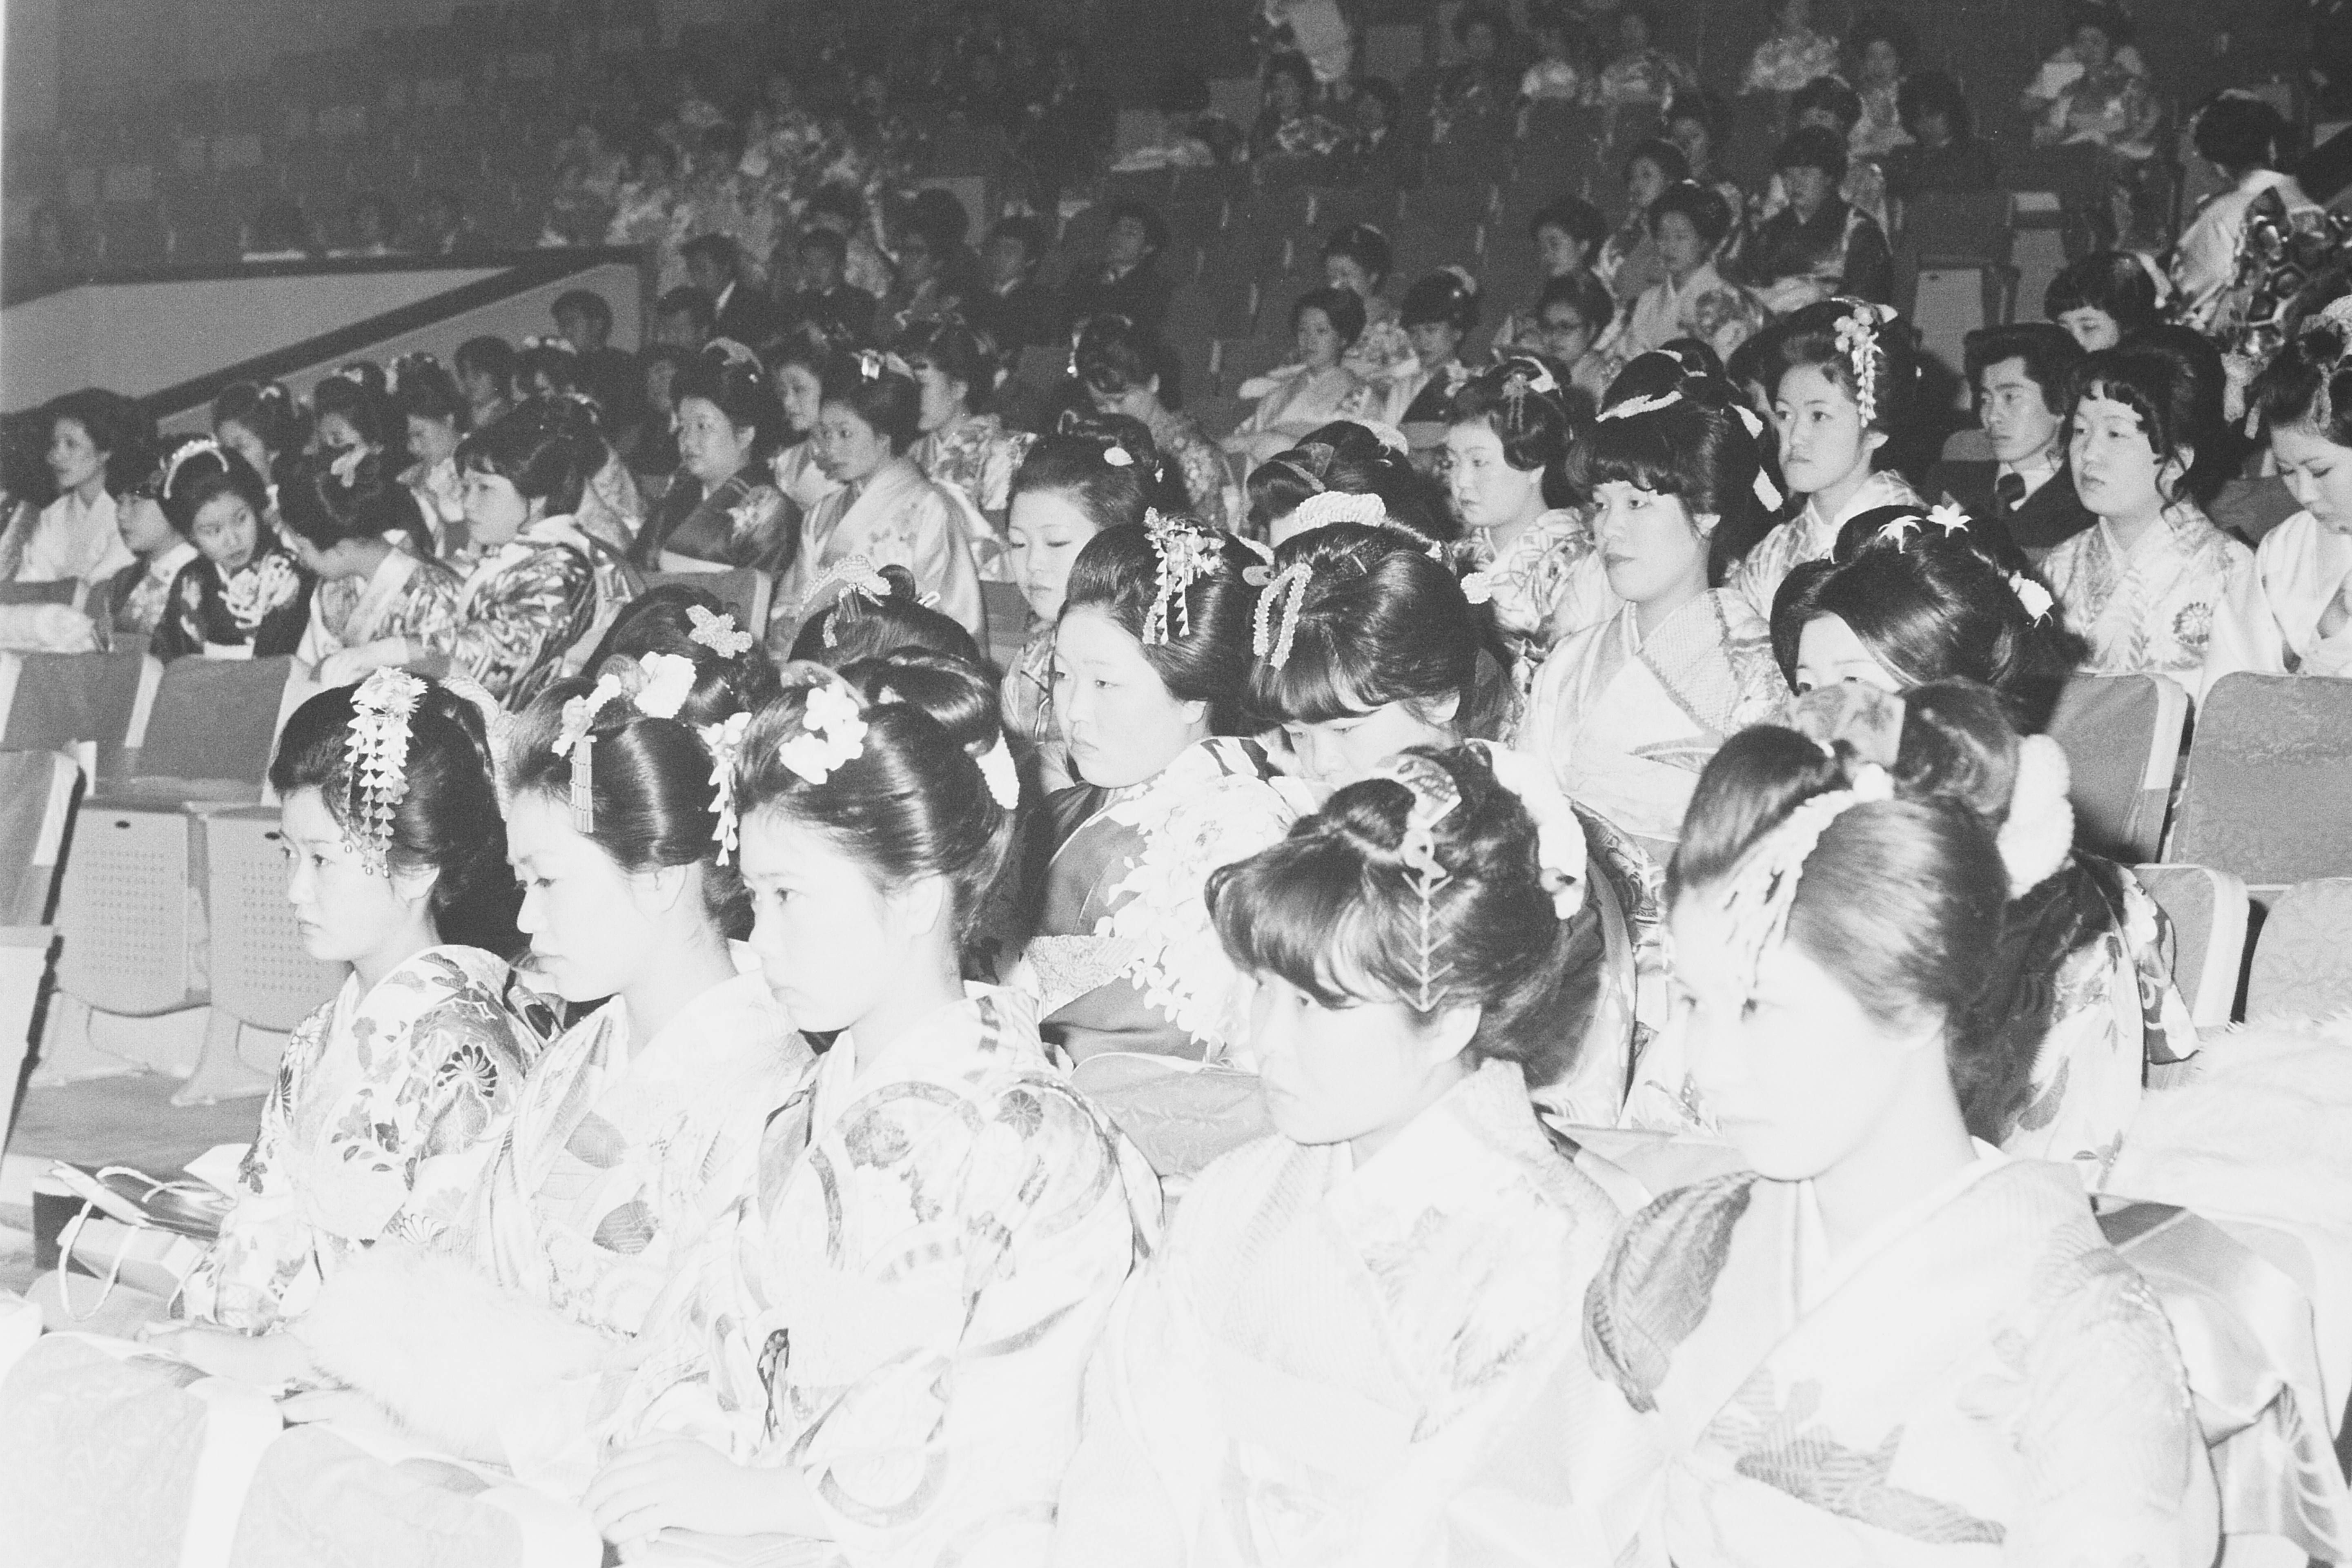 昭和52年の成人式 日本髪を結った女性も多くみられる(昭和52年1月 いわき市撮影)